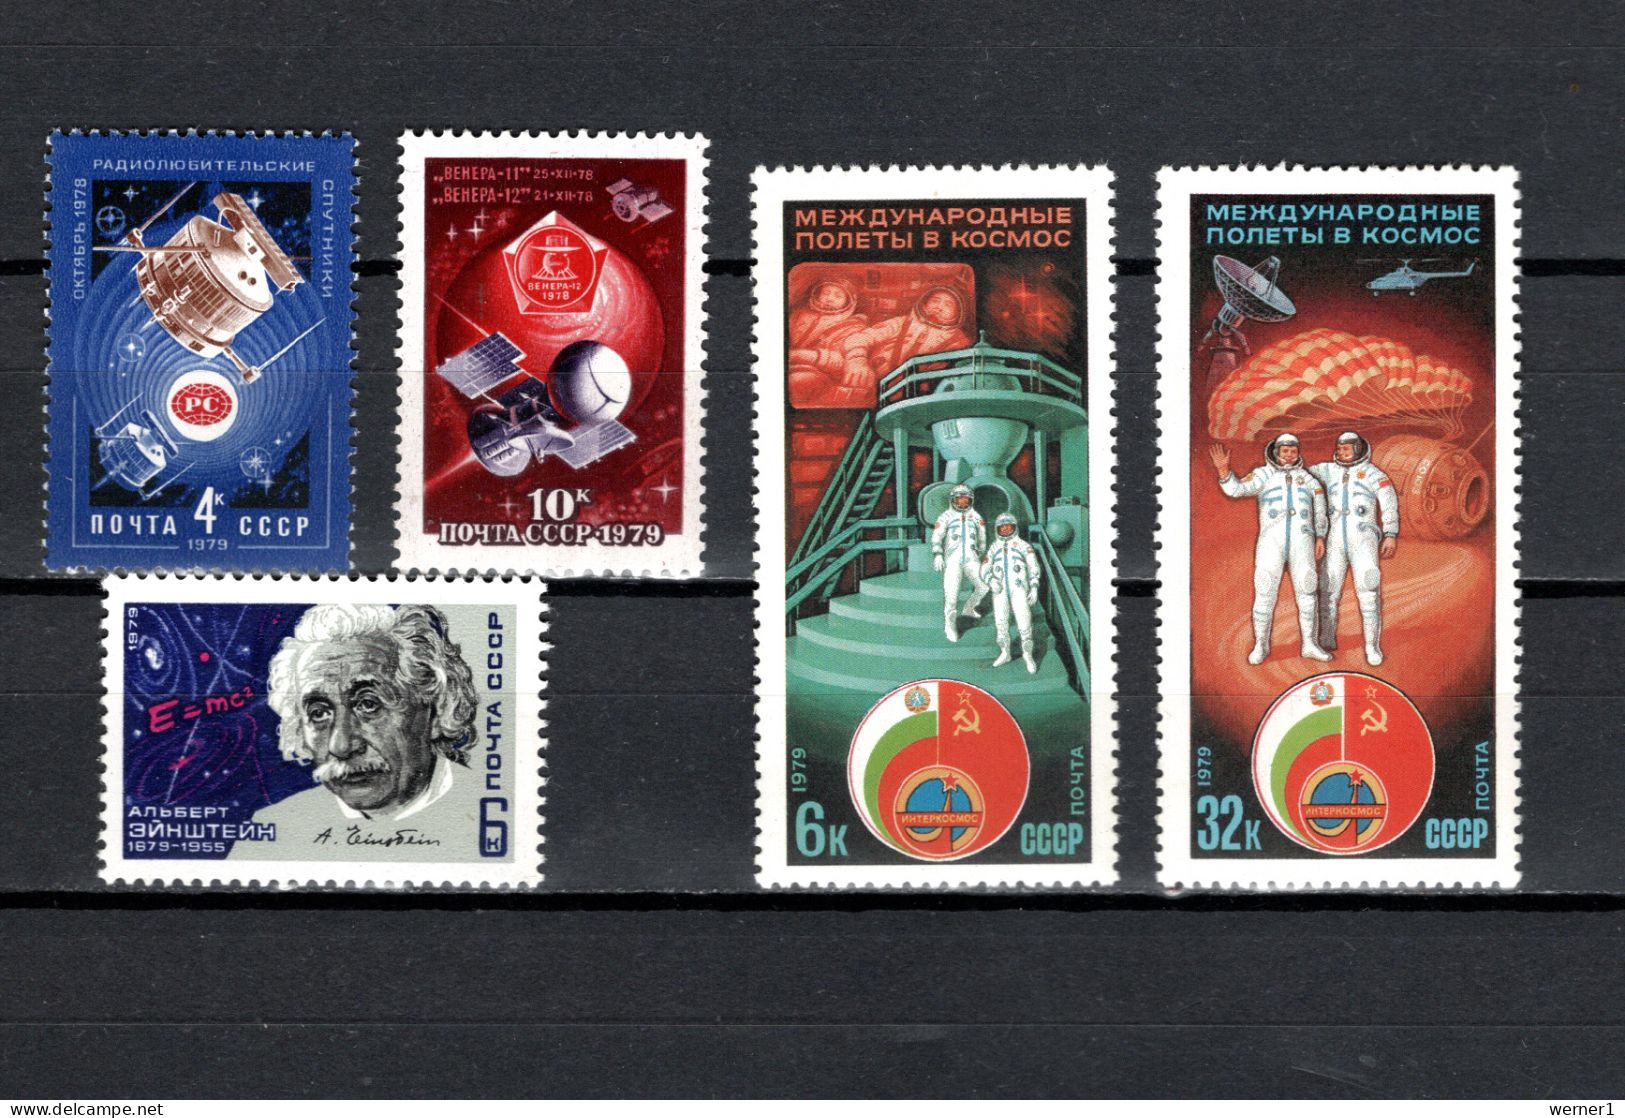 USSR Russia 1979 Space, News Satellites, Venus, Albert Einstein, Interkosmos 5 Stamps MNH - Russie & URSS